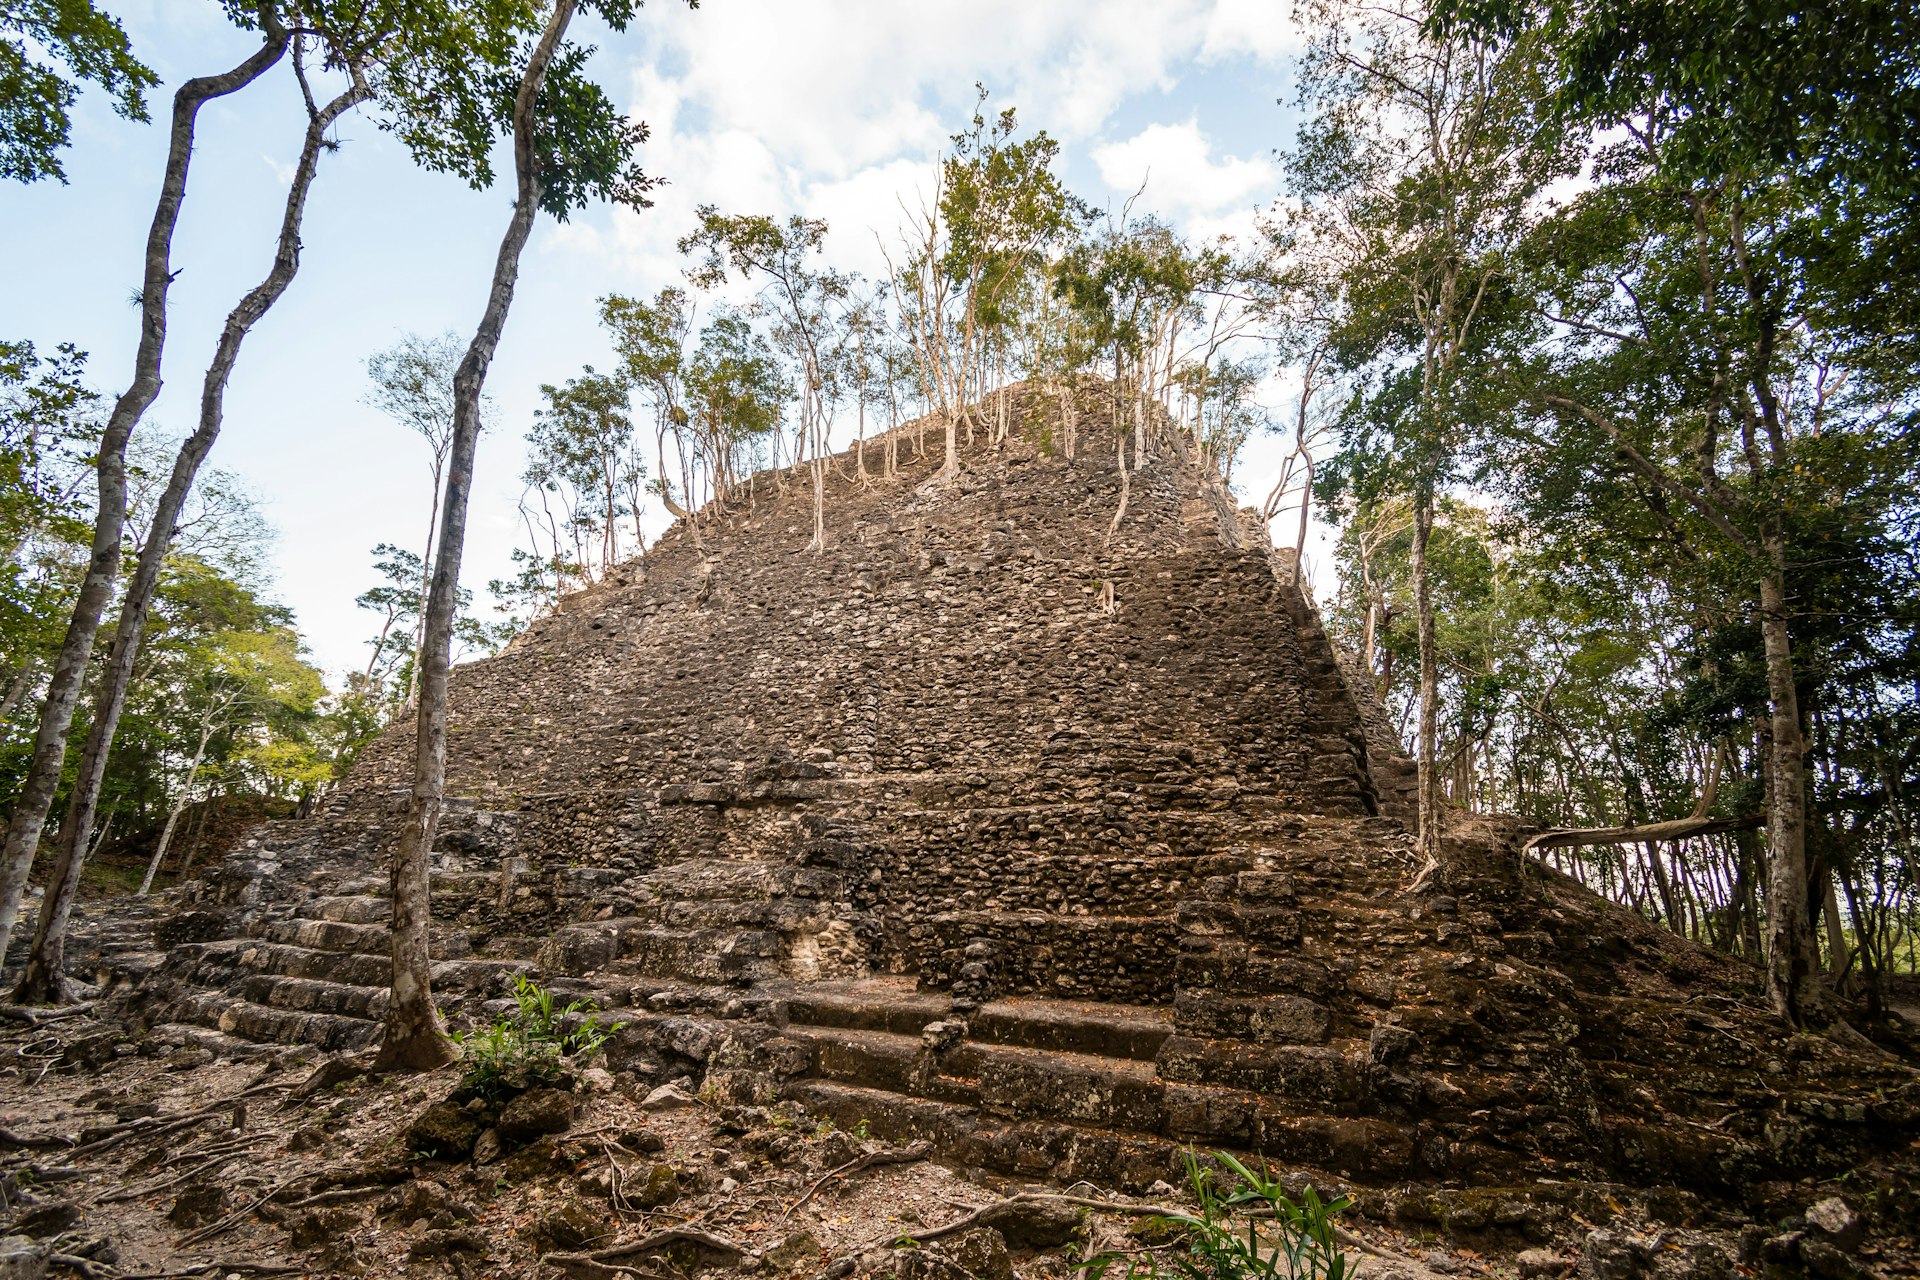 Ruins of an ancient Mayan pyramid (La Danta) deep in the Guatamalan jungle 